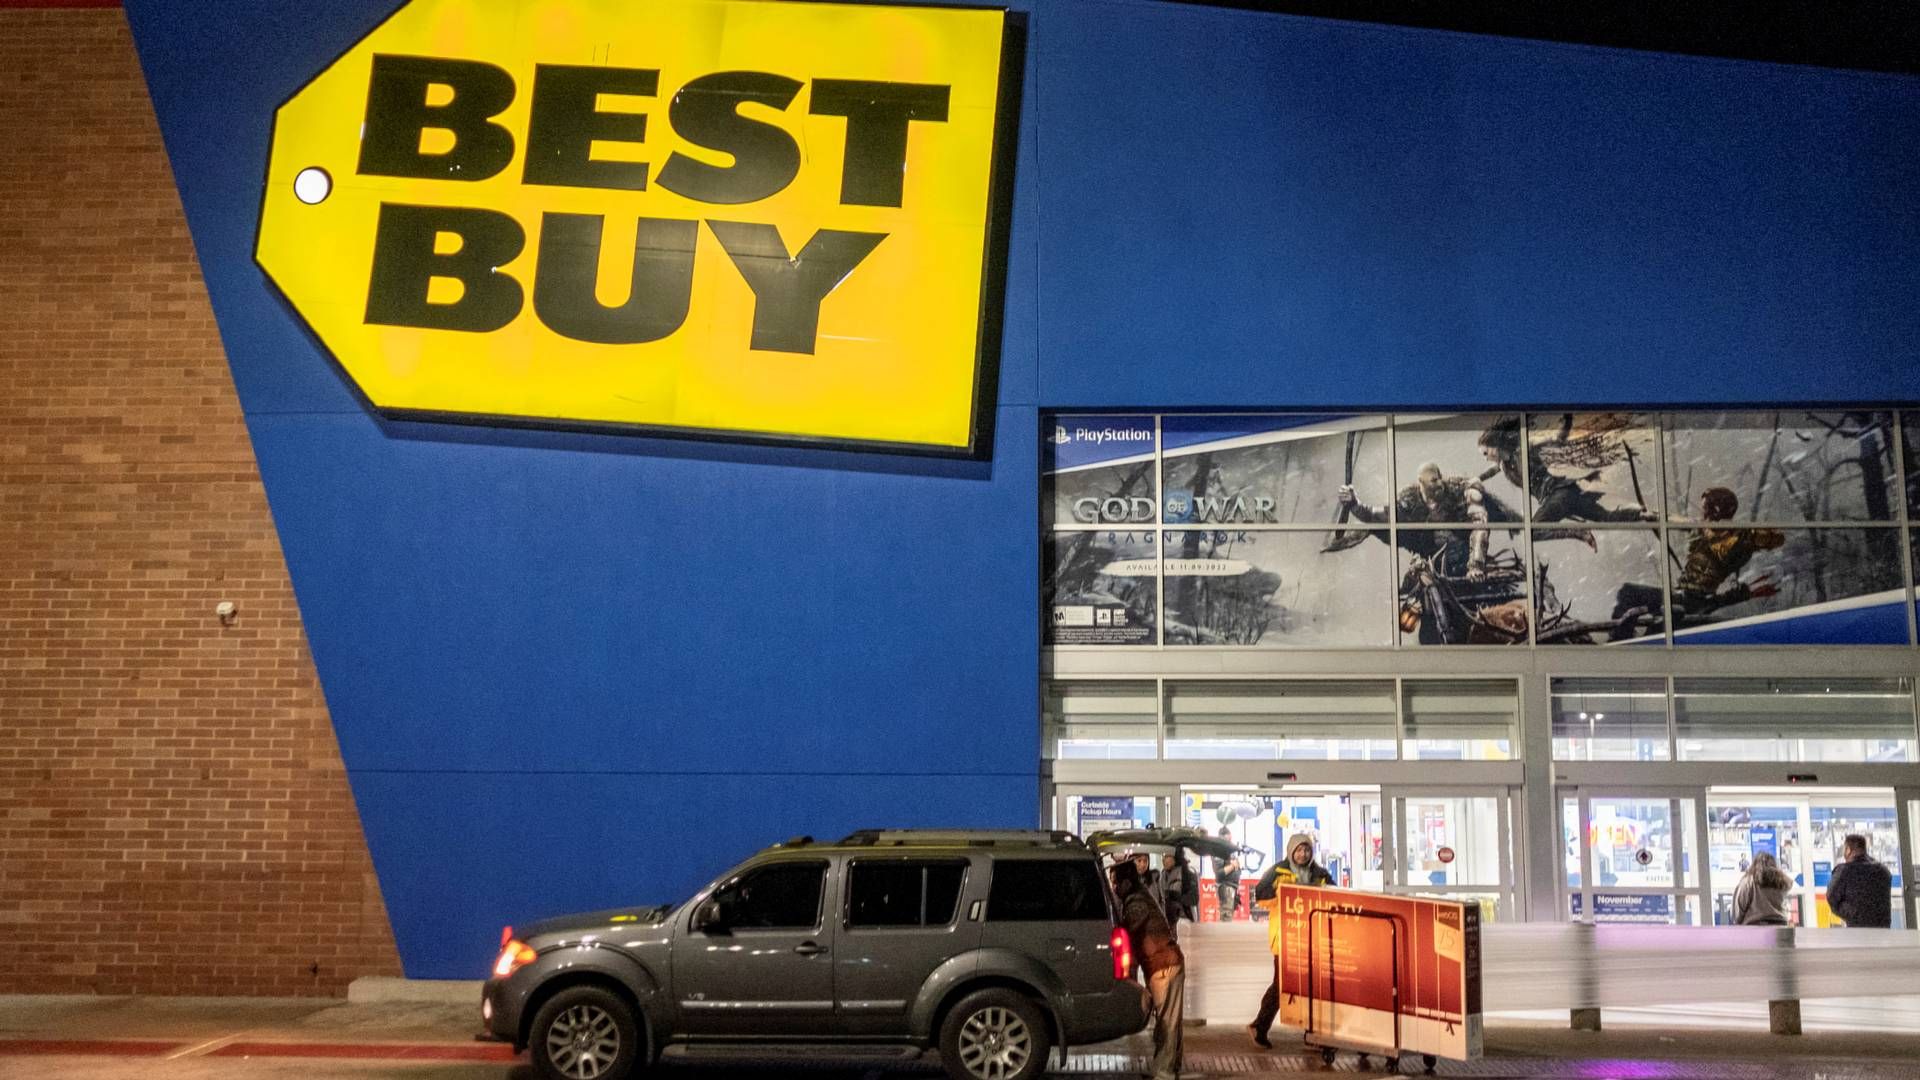 Best Buy er børsnoteret og blandt verdens største elektronikkæder. | Foto: Jim Vondruska